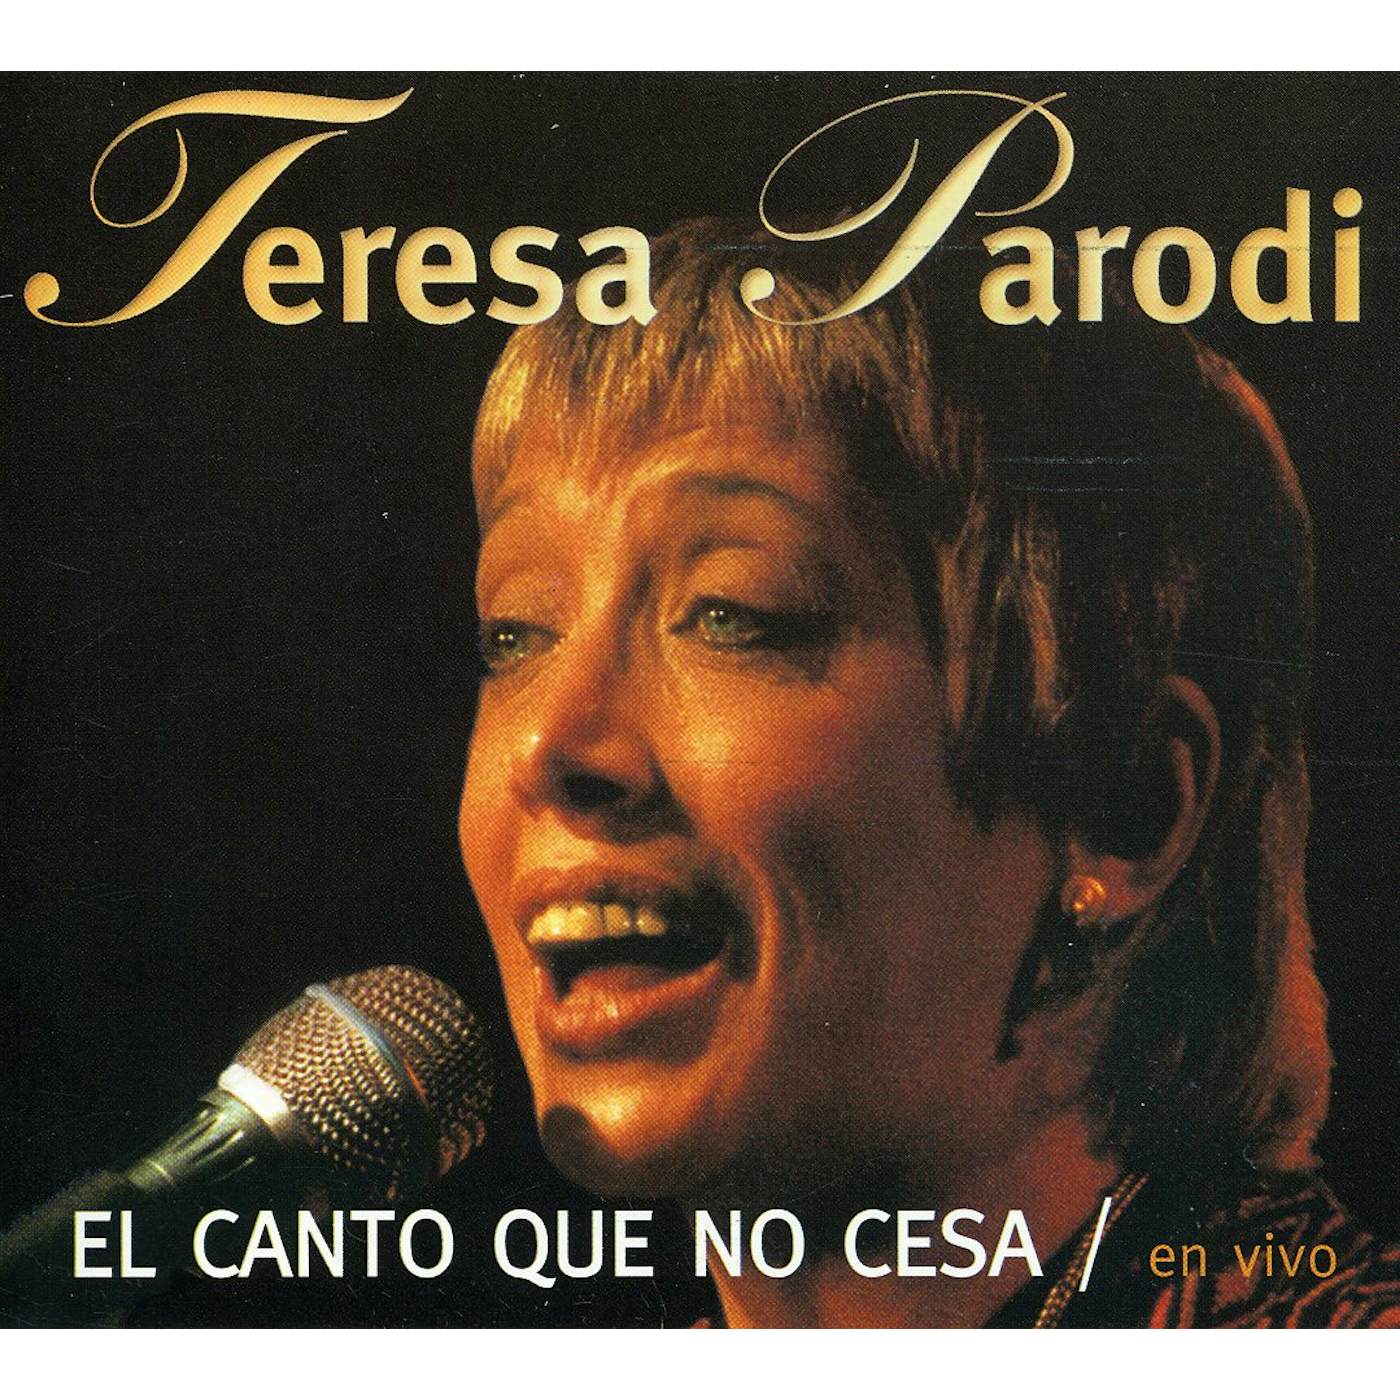 Teresa Parodi EL CANTO QUE NO CESA / EN VIVO CD